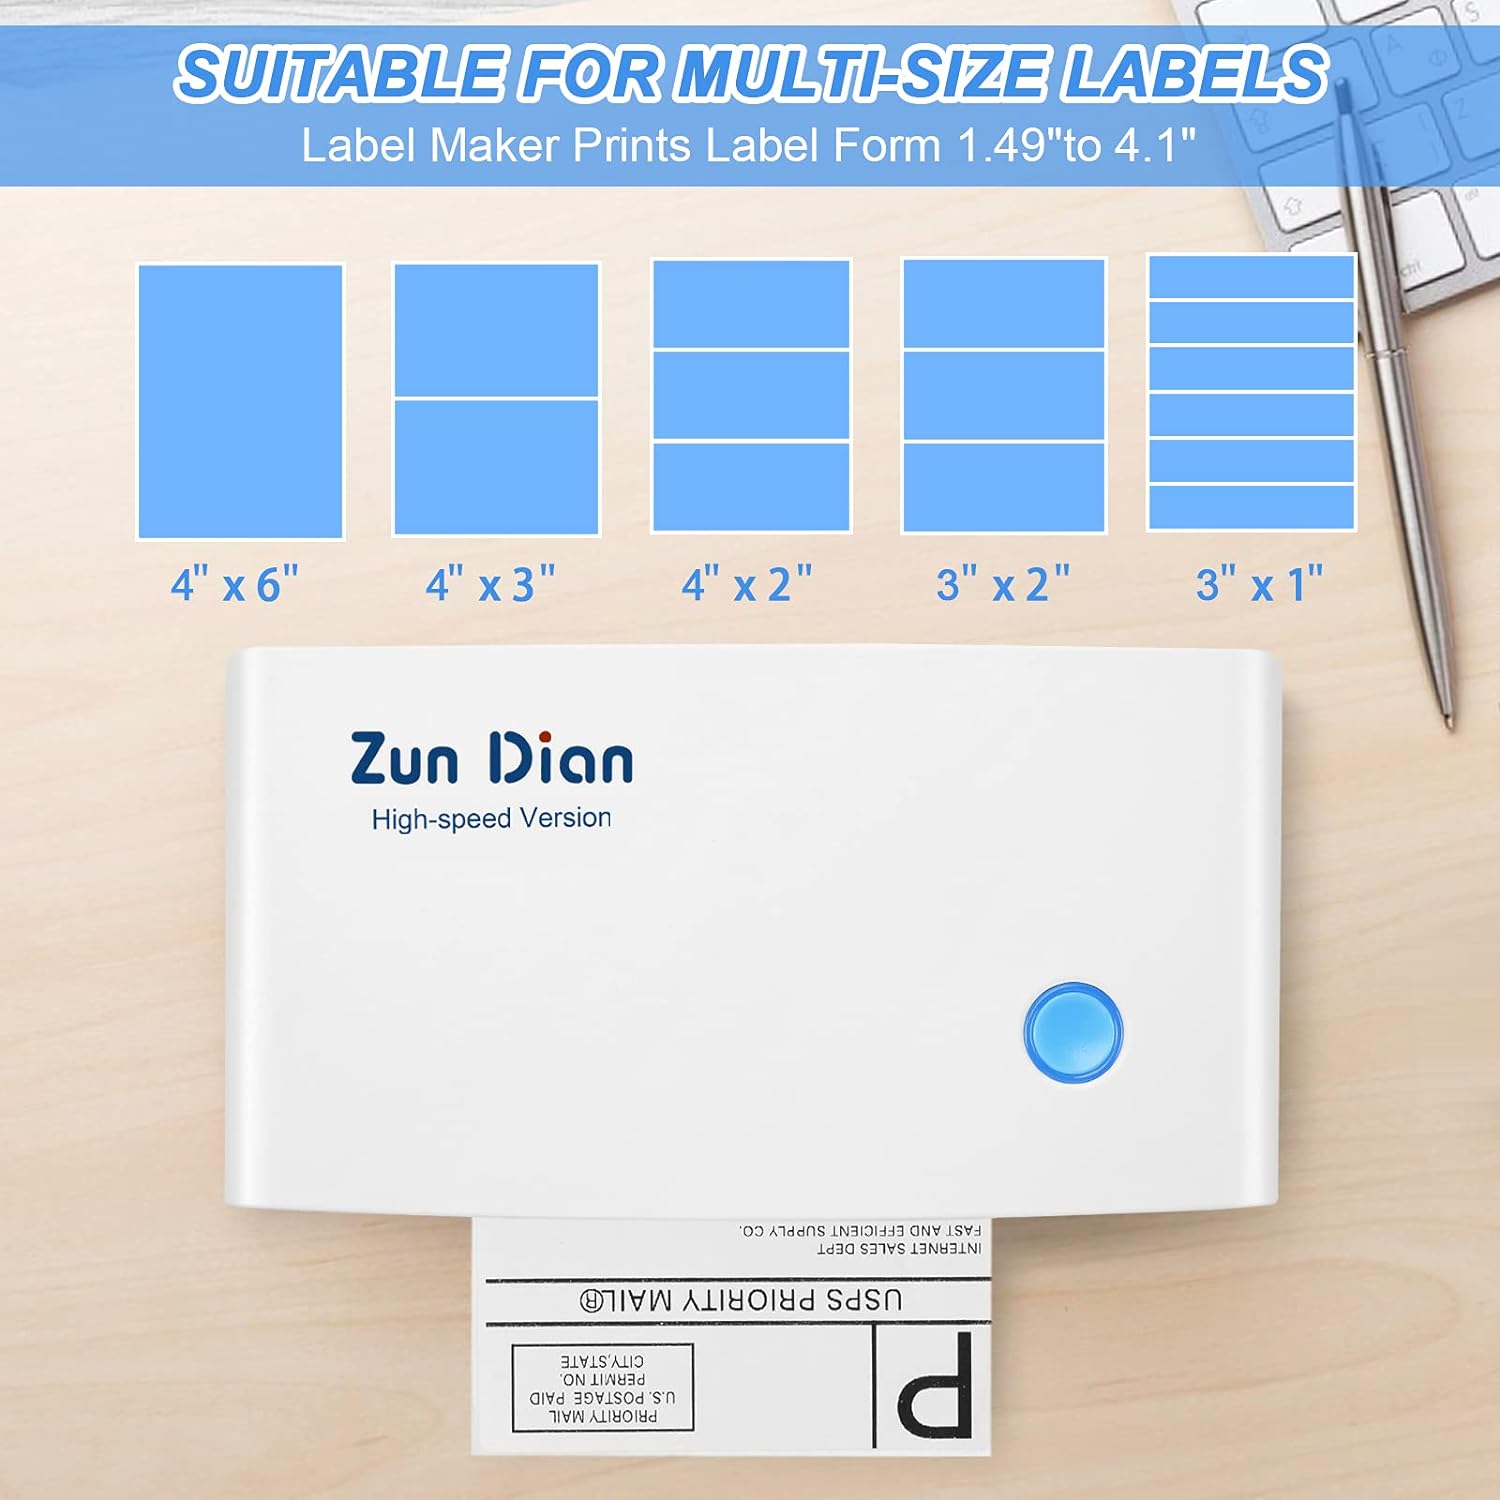 Examining ZunDian Thermal Label Printer